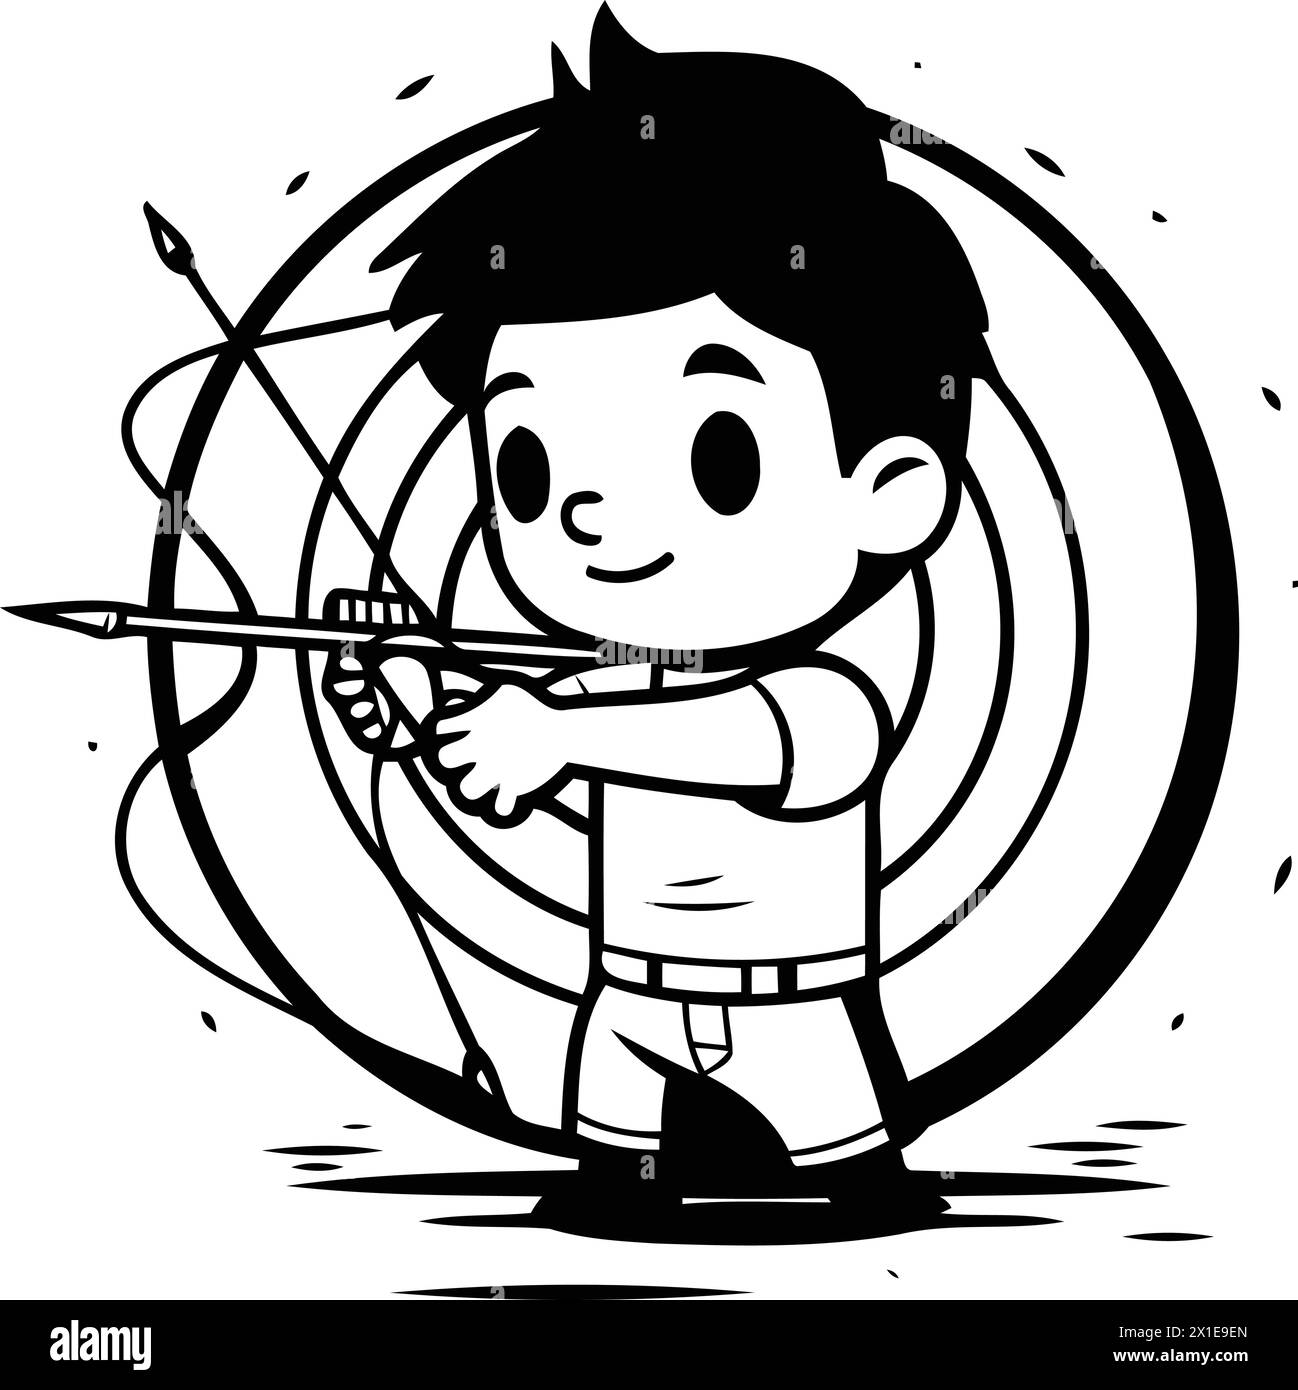 Cartoon boy aiming with a bow and arrow. Vector illustration. Stock Vector